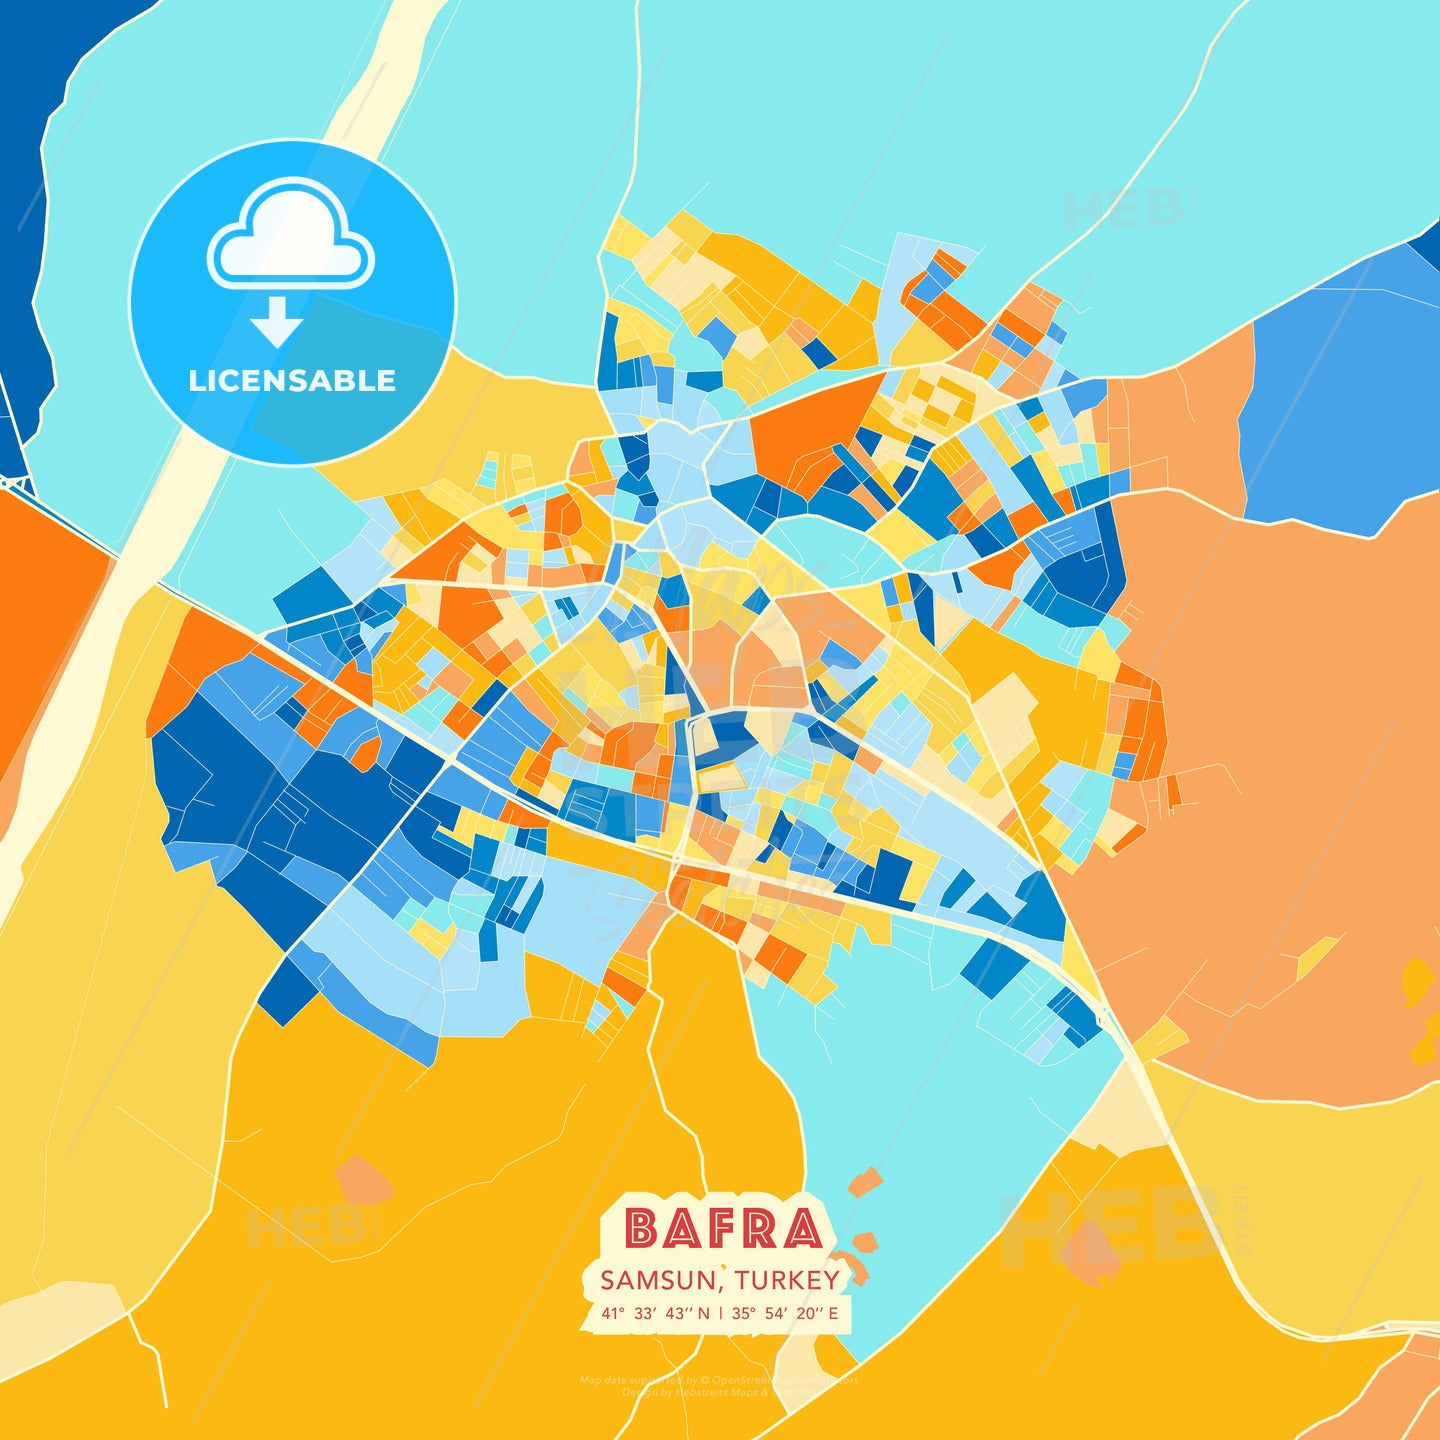 Bafra, Samsun, Turkey, map - HEBSTREITS Sketches